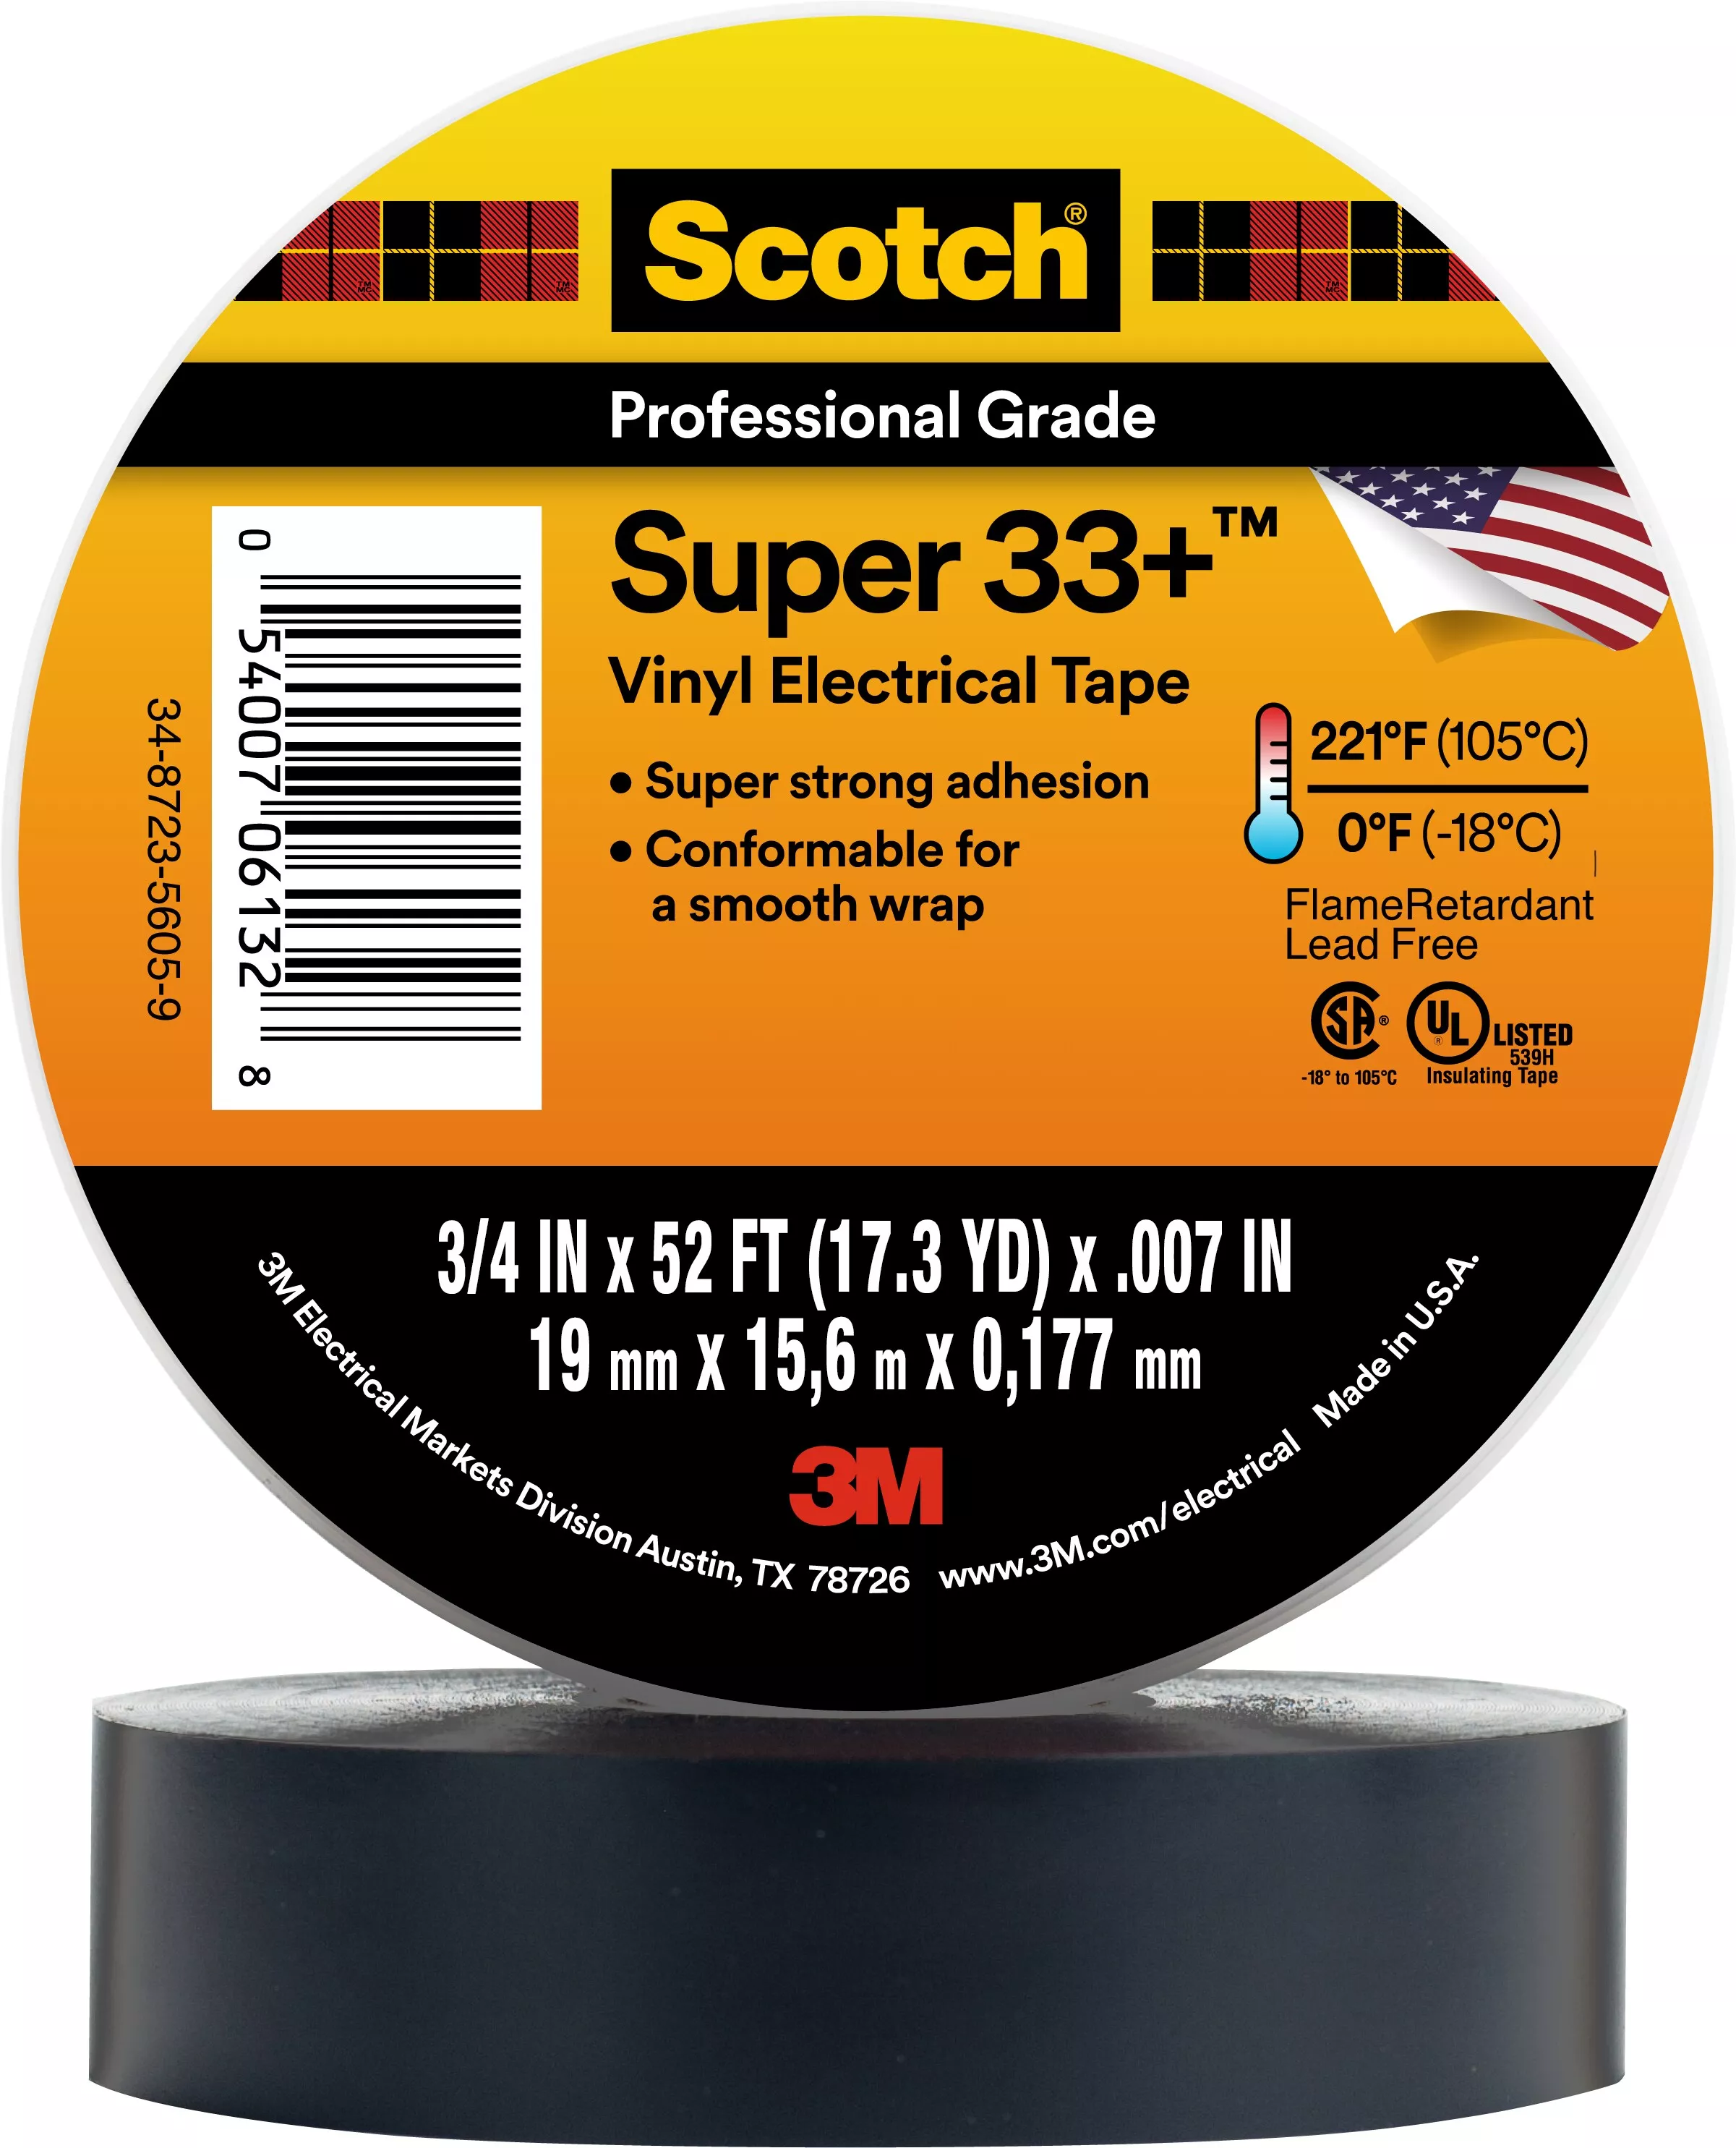 SKU 7010397928 | Scotch® Super 33+ Vinyl Electrical Tape